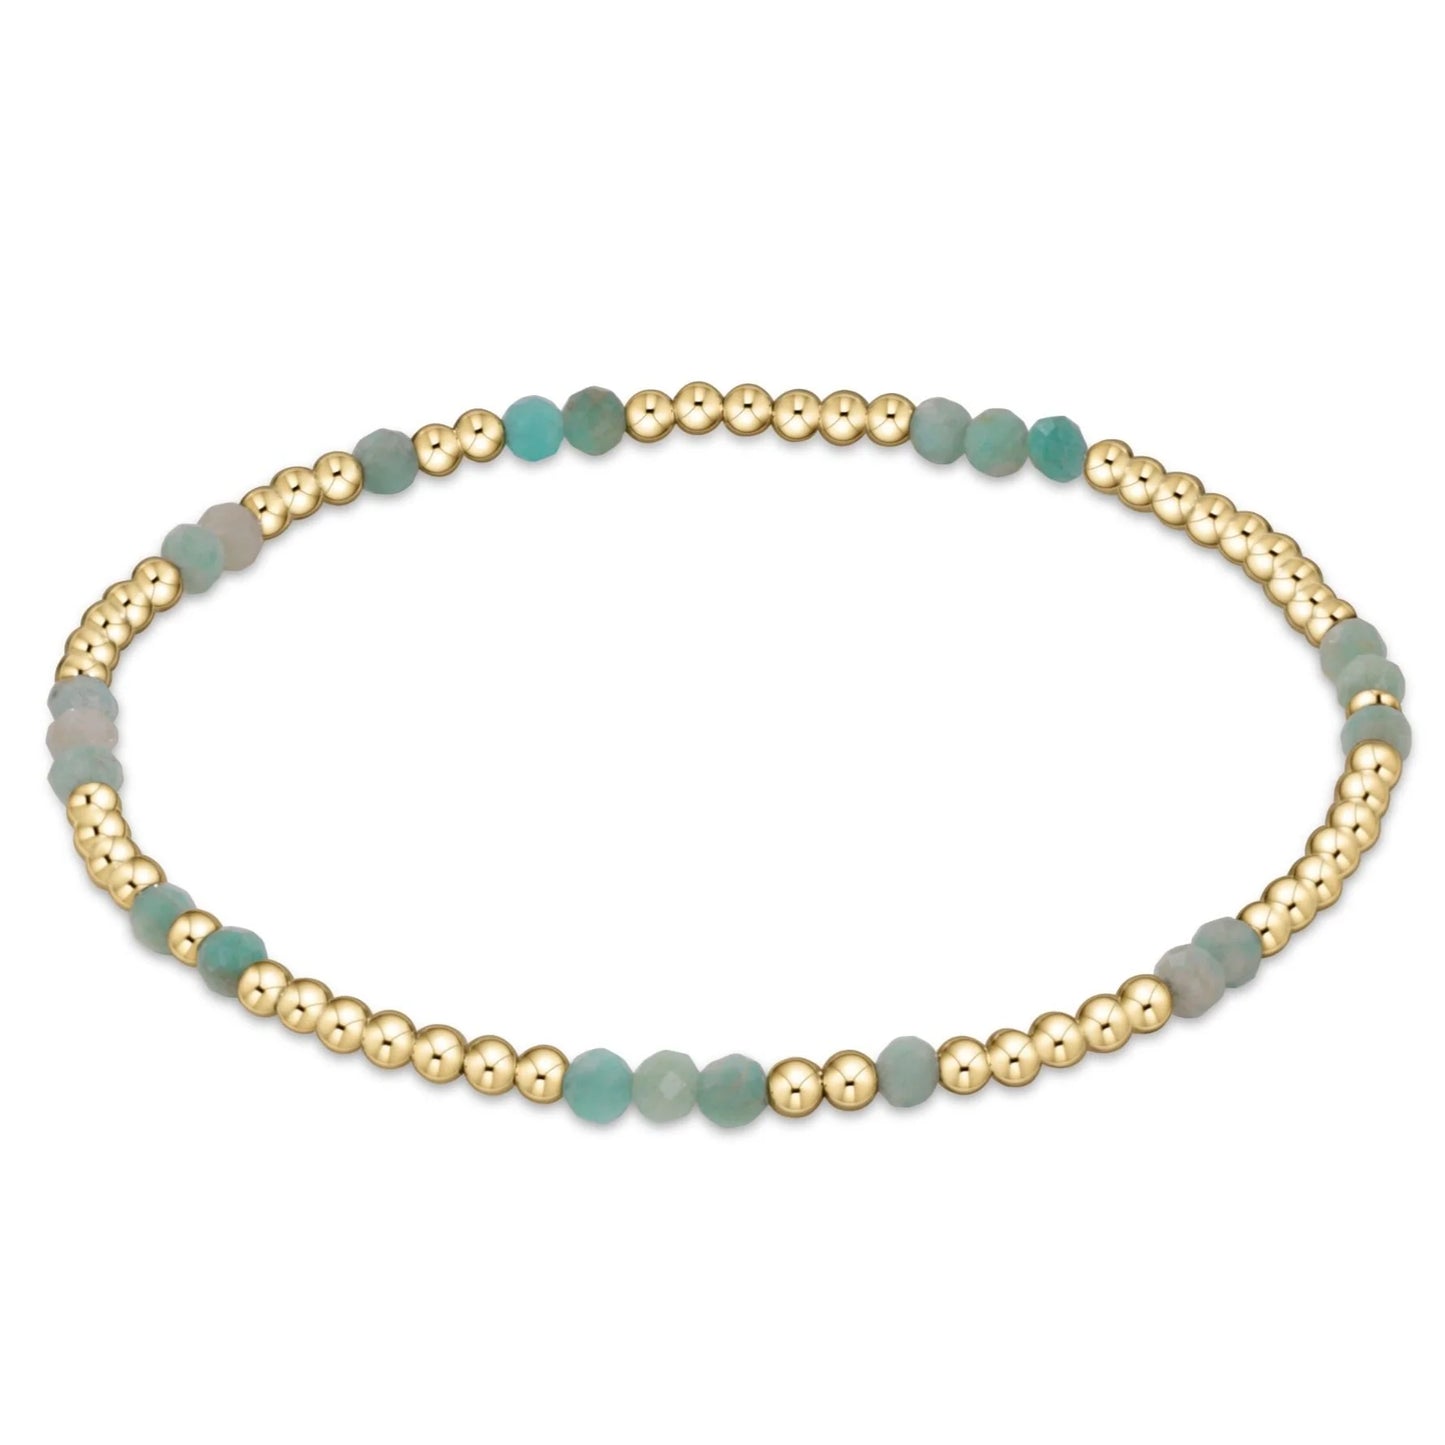 Hope Unwritten Gemstone Bracelet-Amazonite